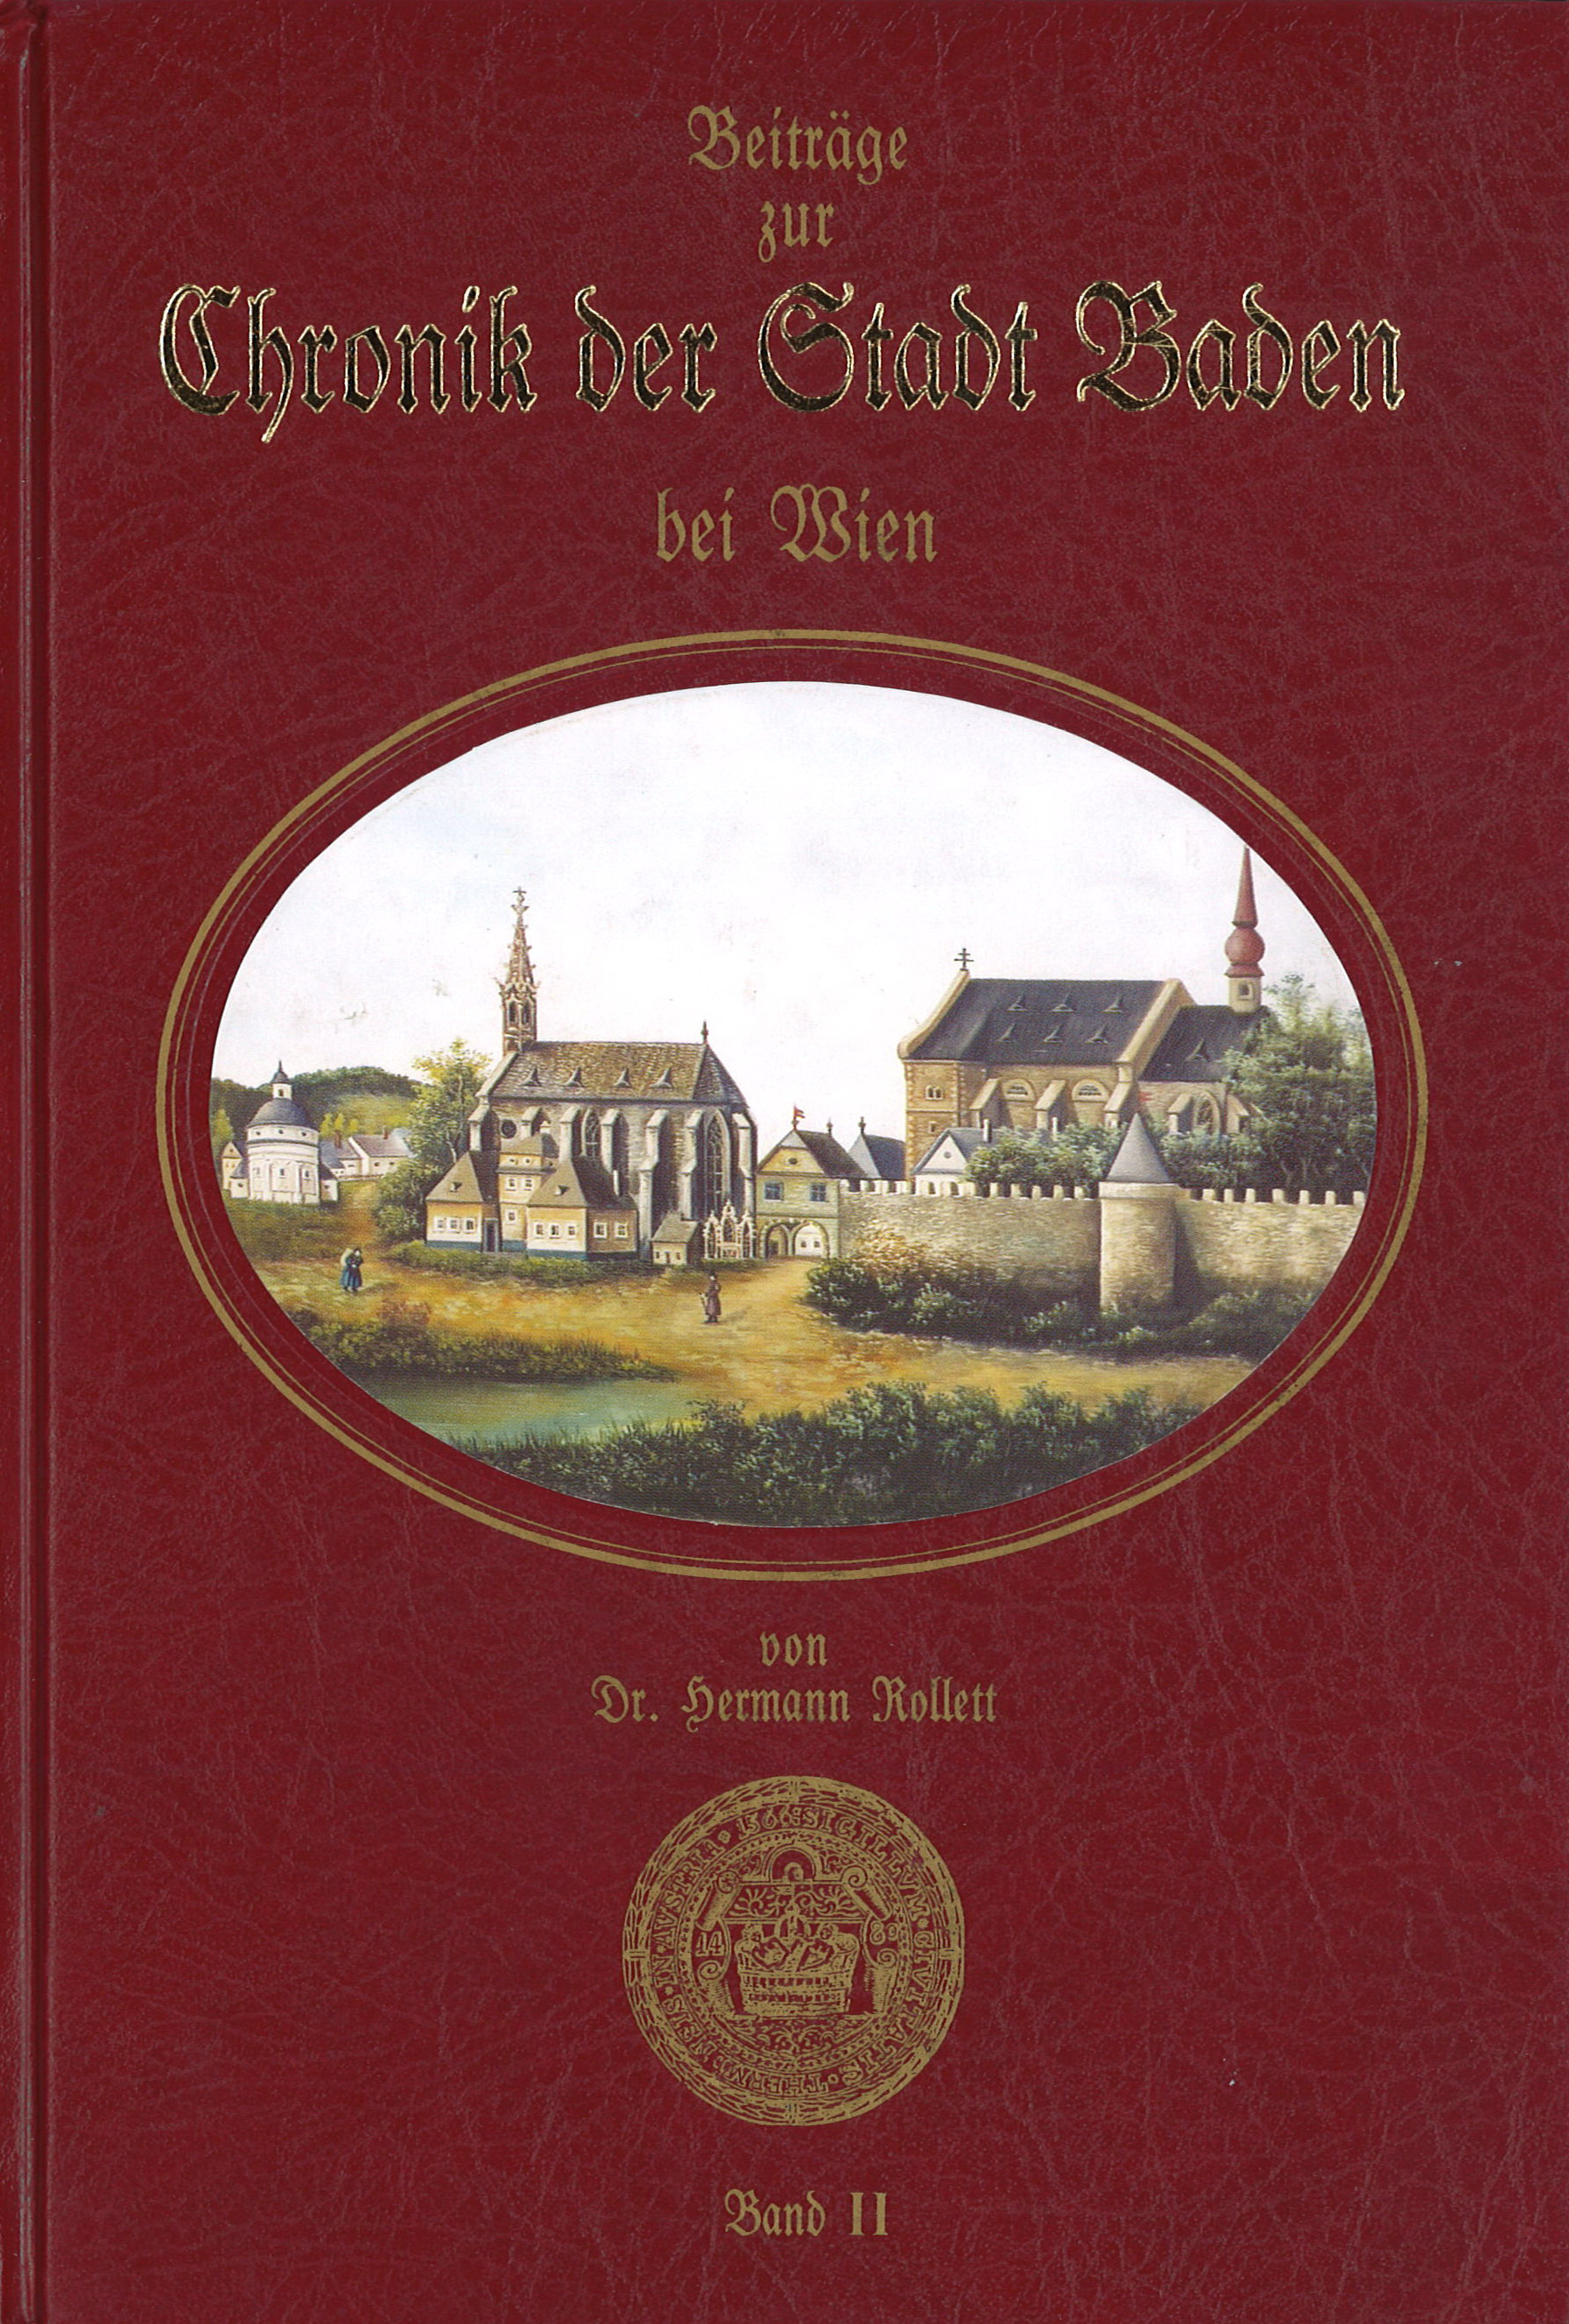 Beiträge zur Chronik Chronik der Stadt Baden bei Wien von Dr. Hermann Rollett Band 2, 566 Seiten, Rudolf Maurer € 49,00